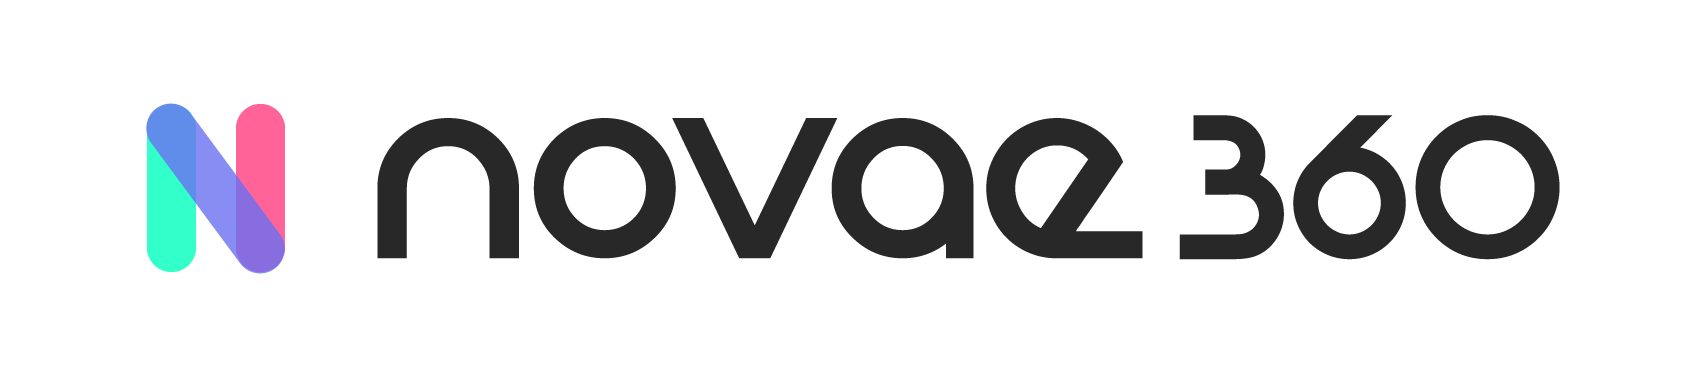 Novae360 logo